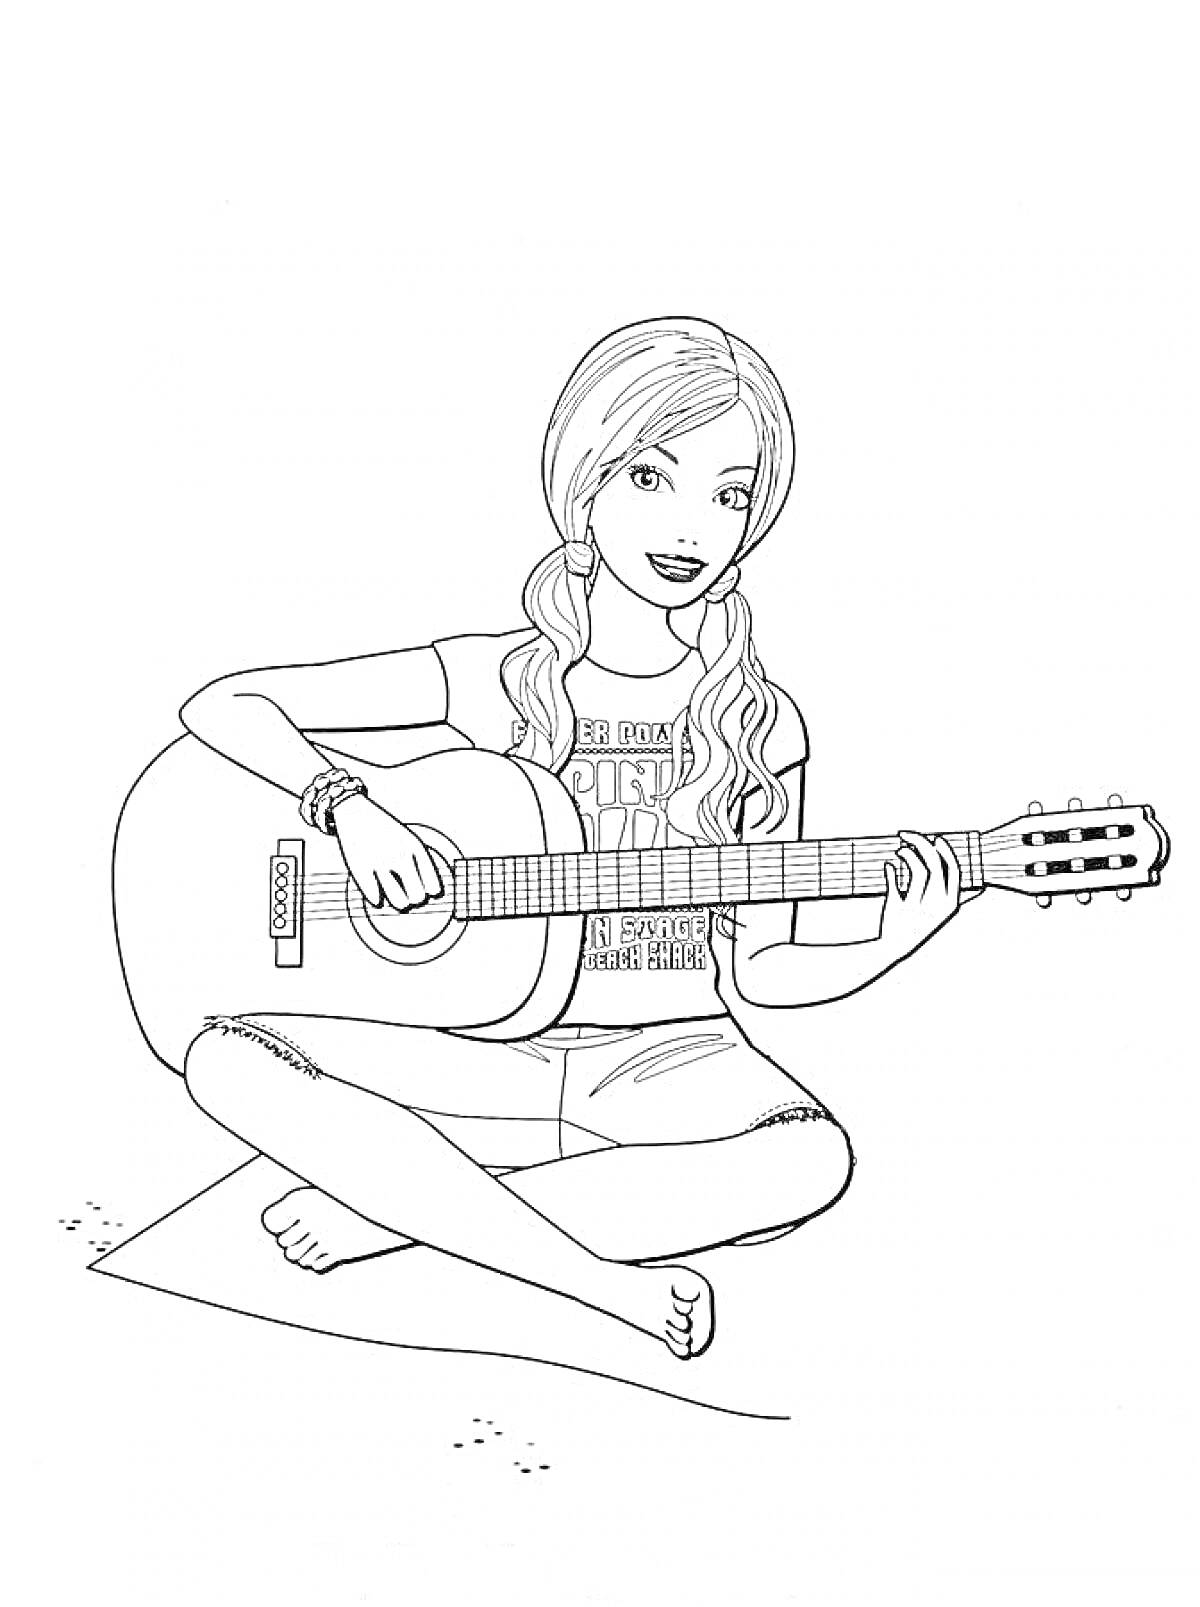 Раскраска Девушка с гитарой сидит на полу и играет